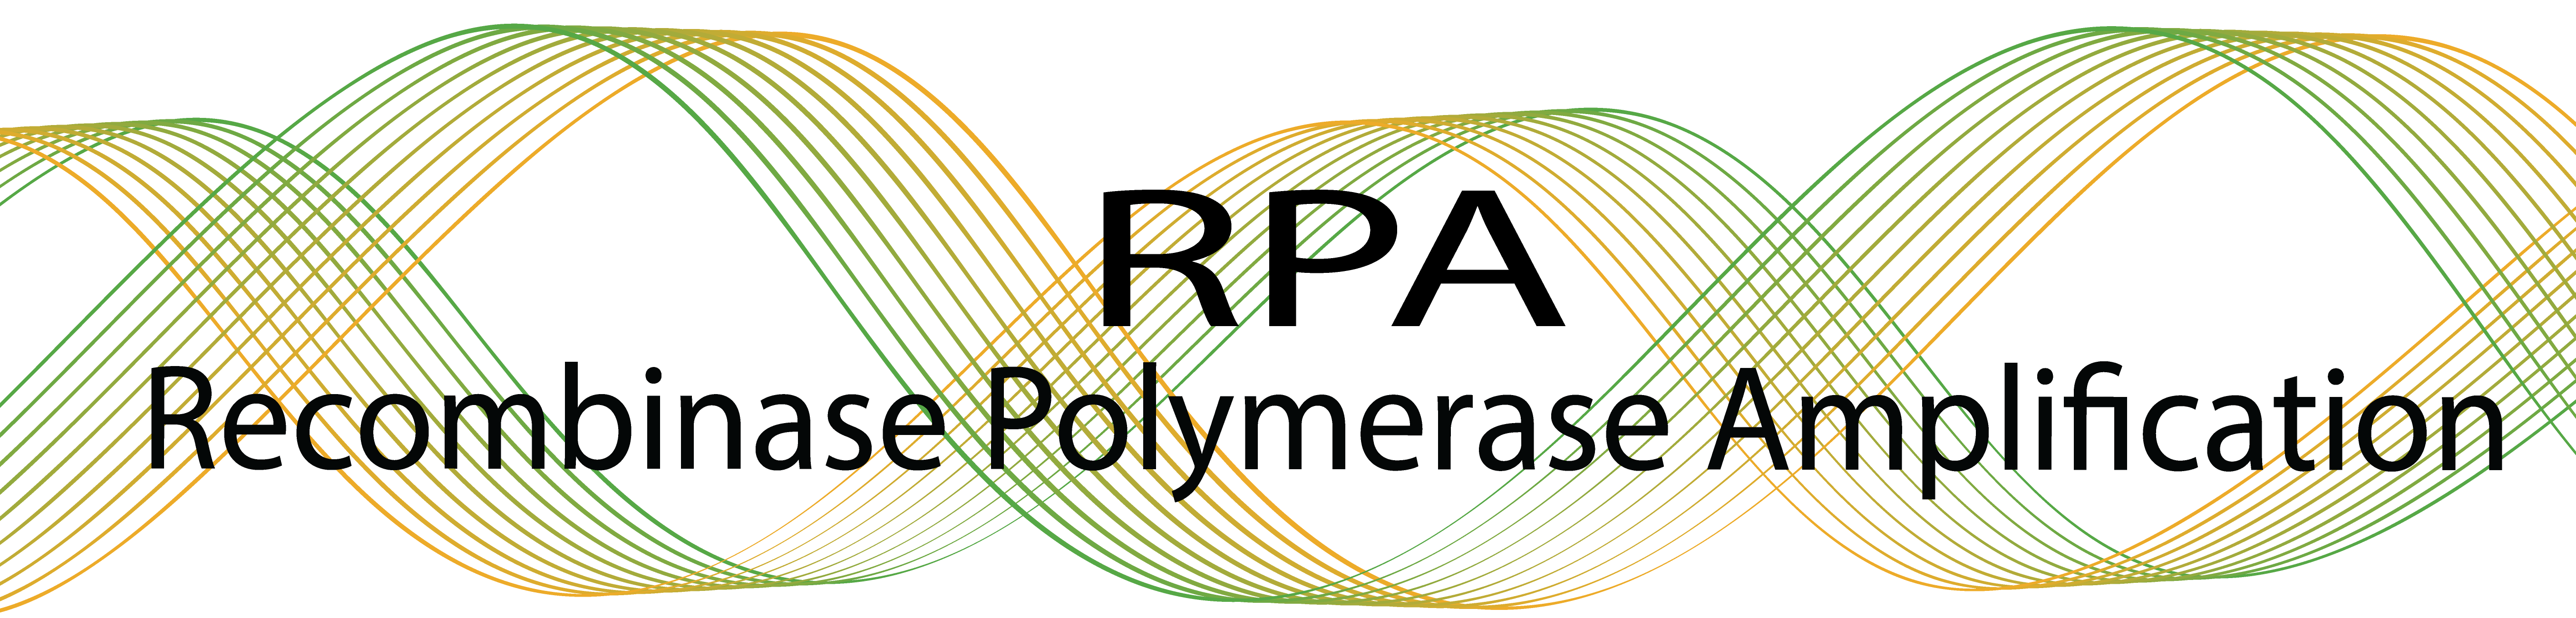 Recombinase Polymerase Amplification